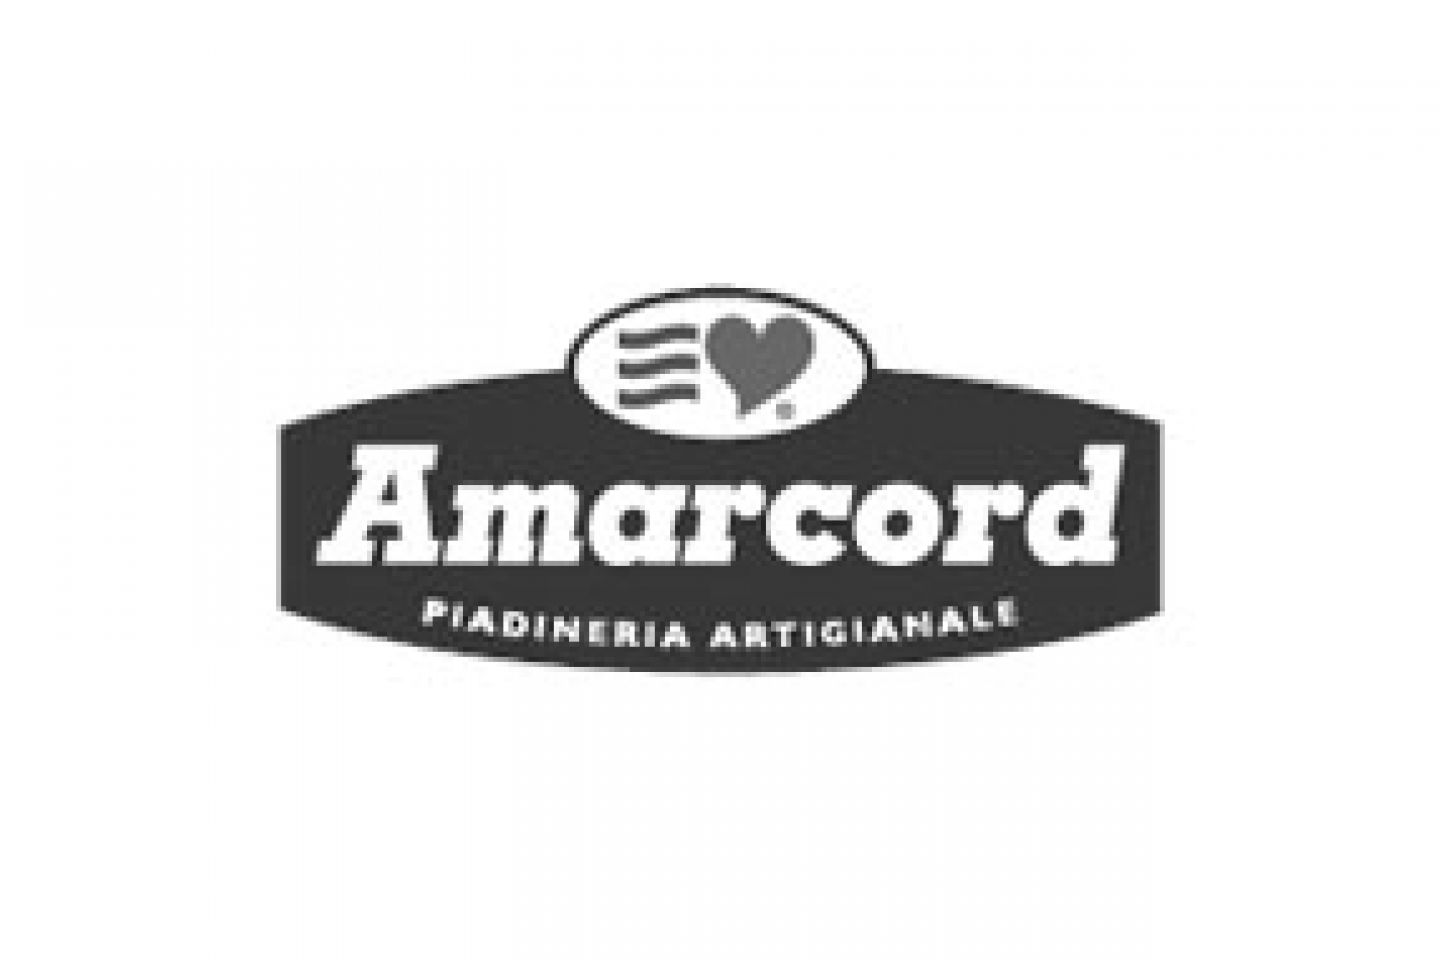 Il logo della piadineria Amarcord evidenzia l'amore per la piadina artigianale